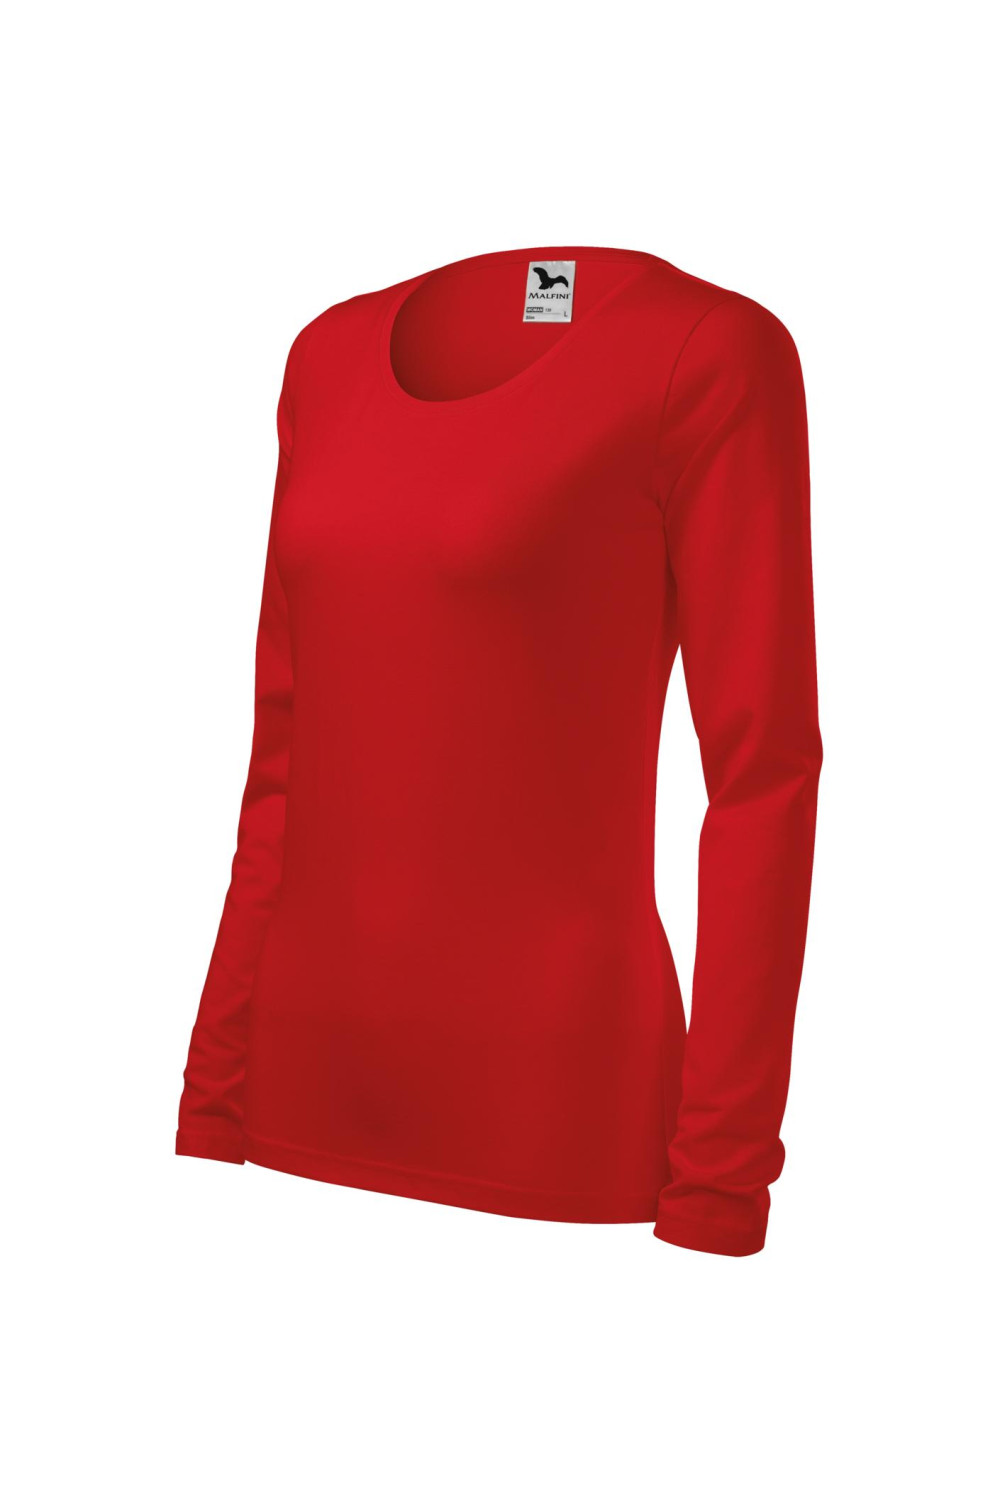 Koszulka damska SLIM długi rękaw 139 czerwony